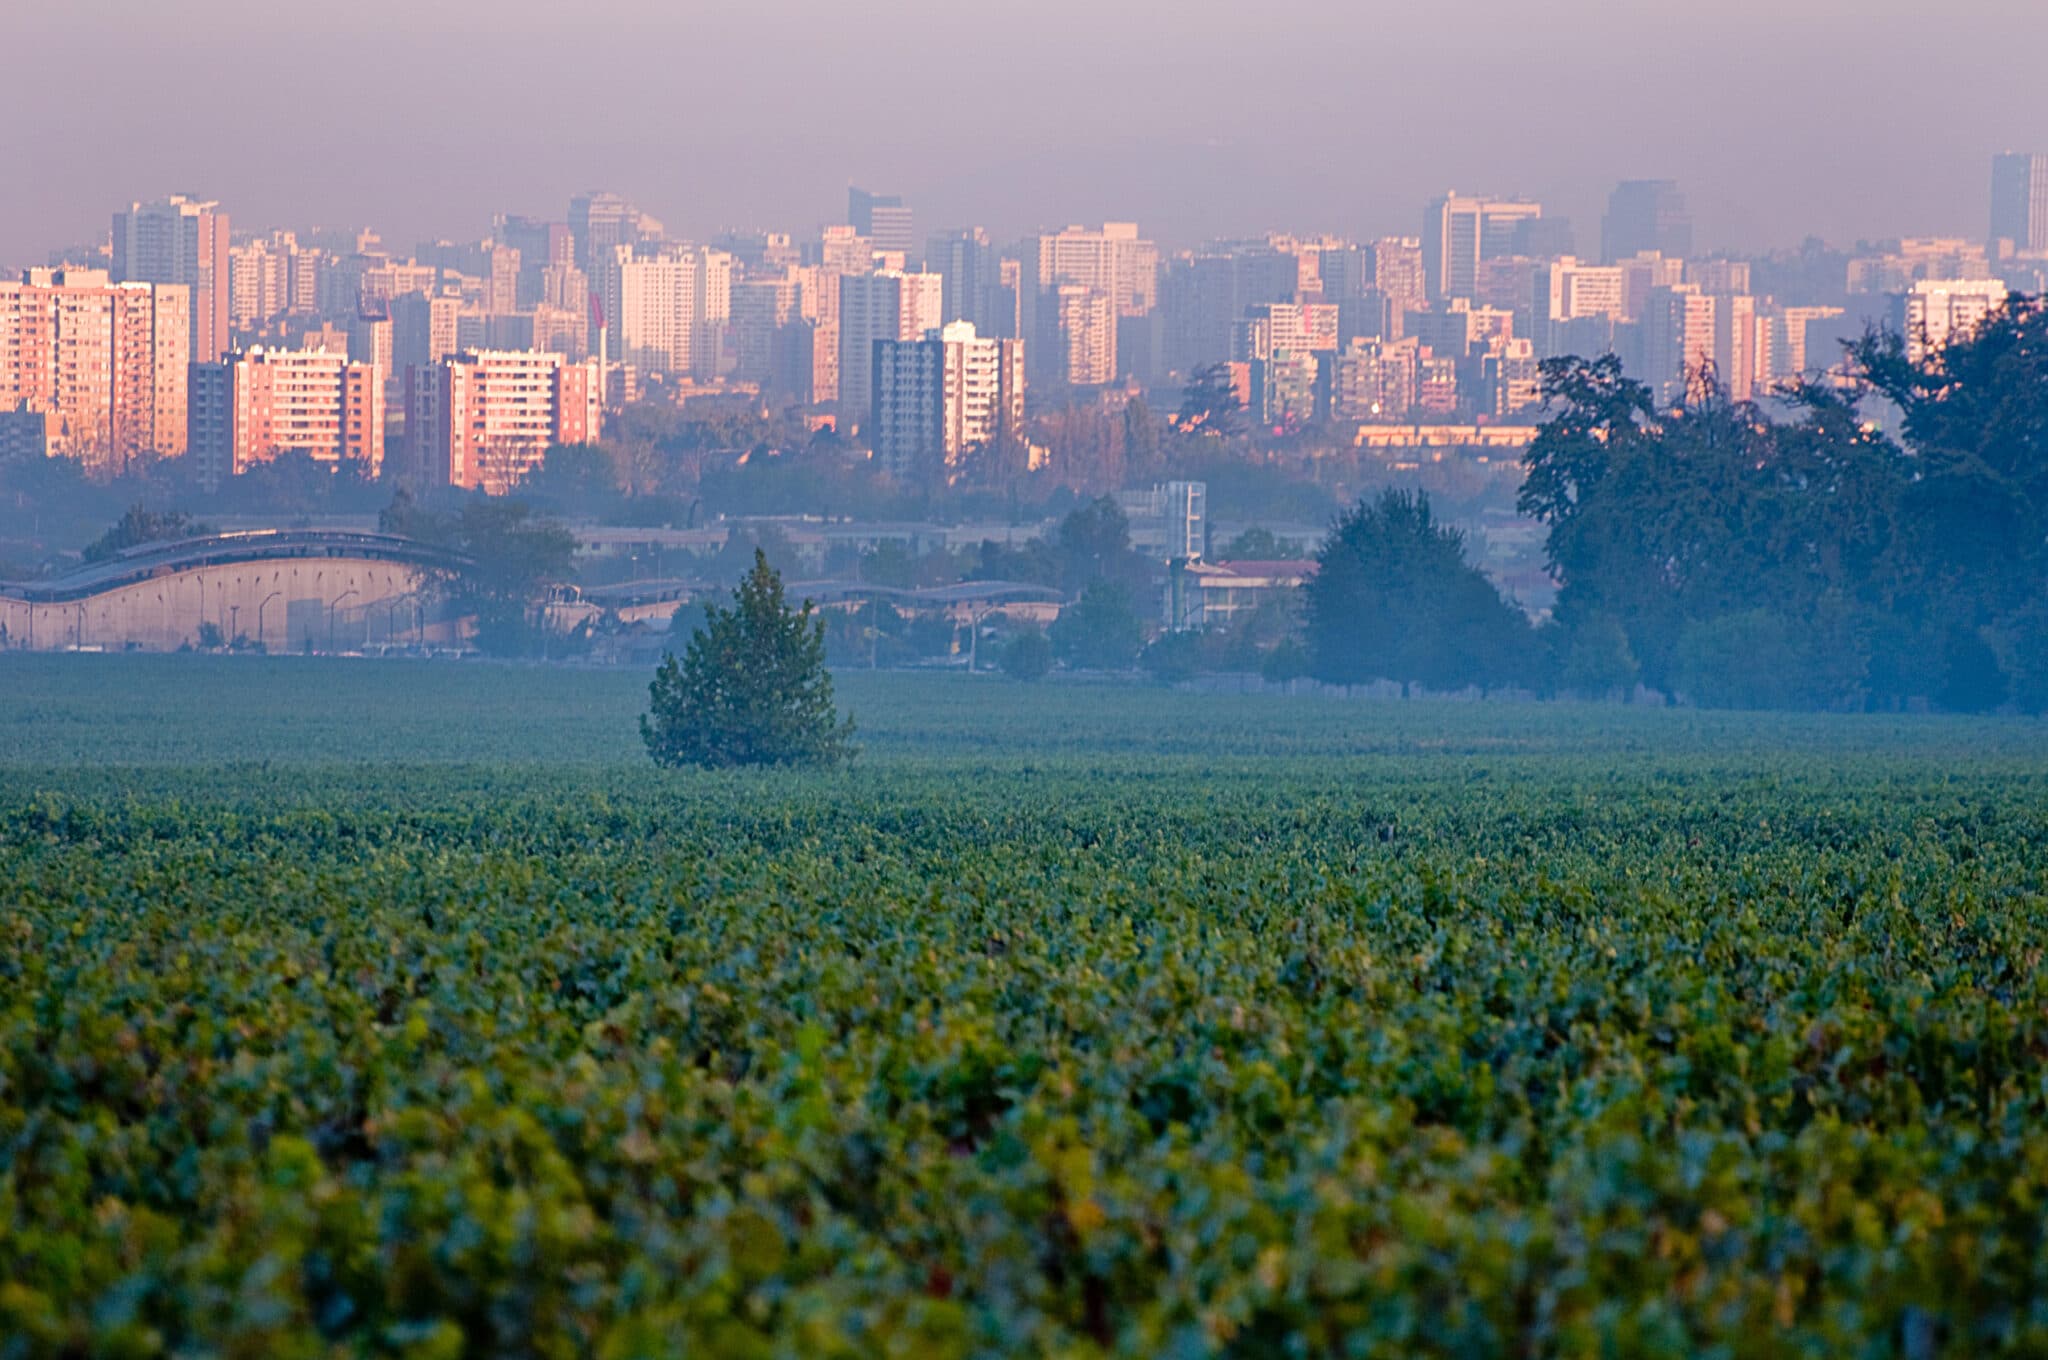 Se vores vine fra Chile